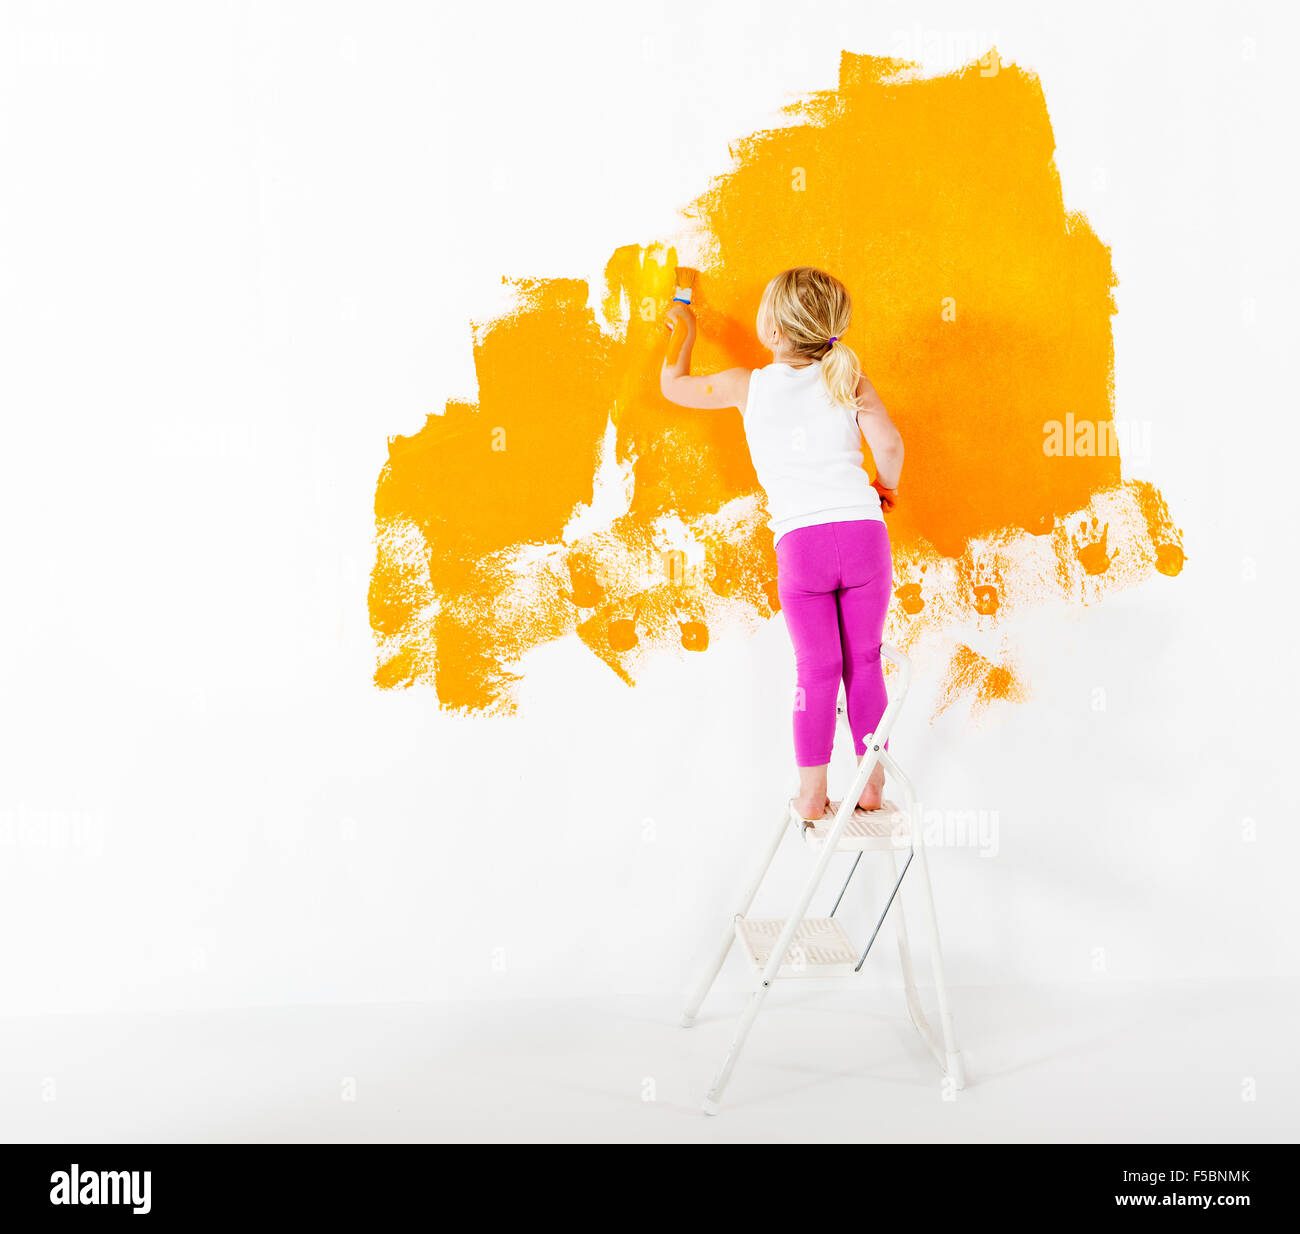 Bambina pittura muro bianco con colore arancio Foto Stock